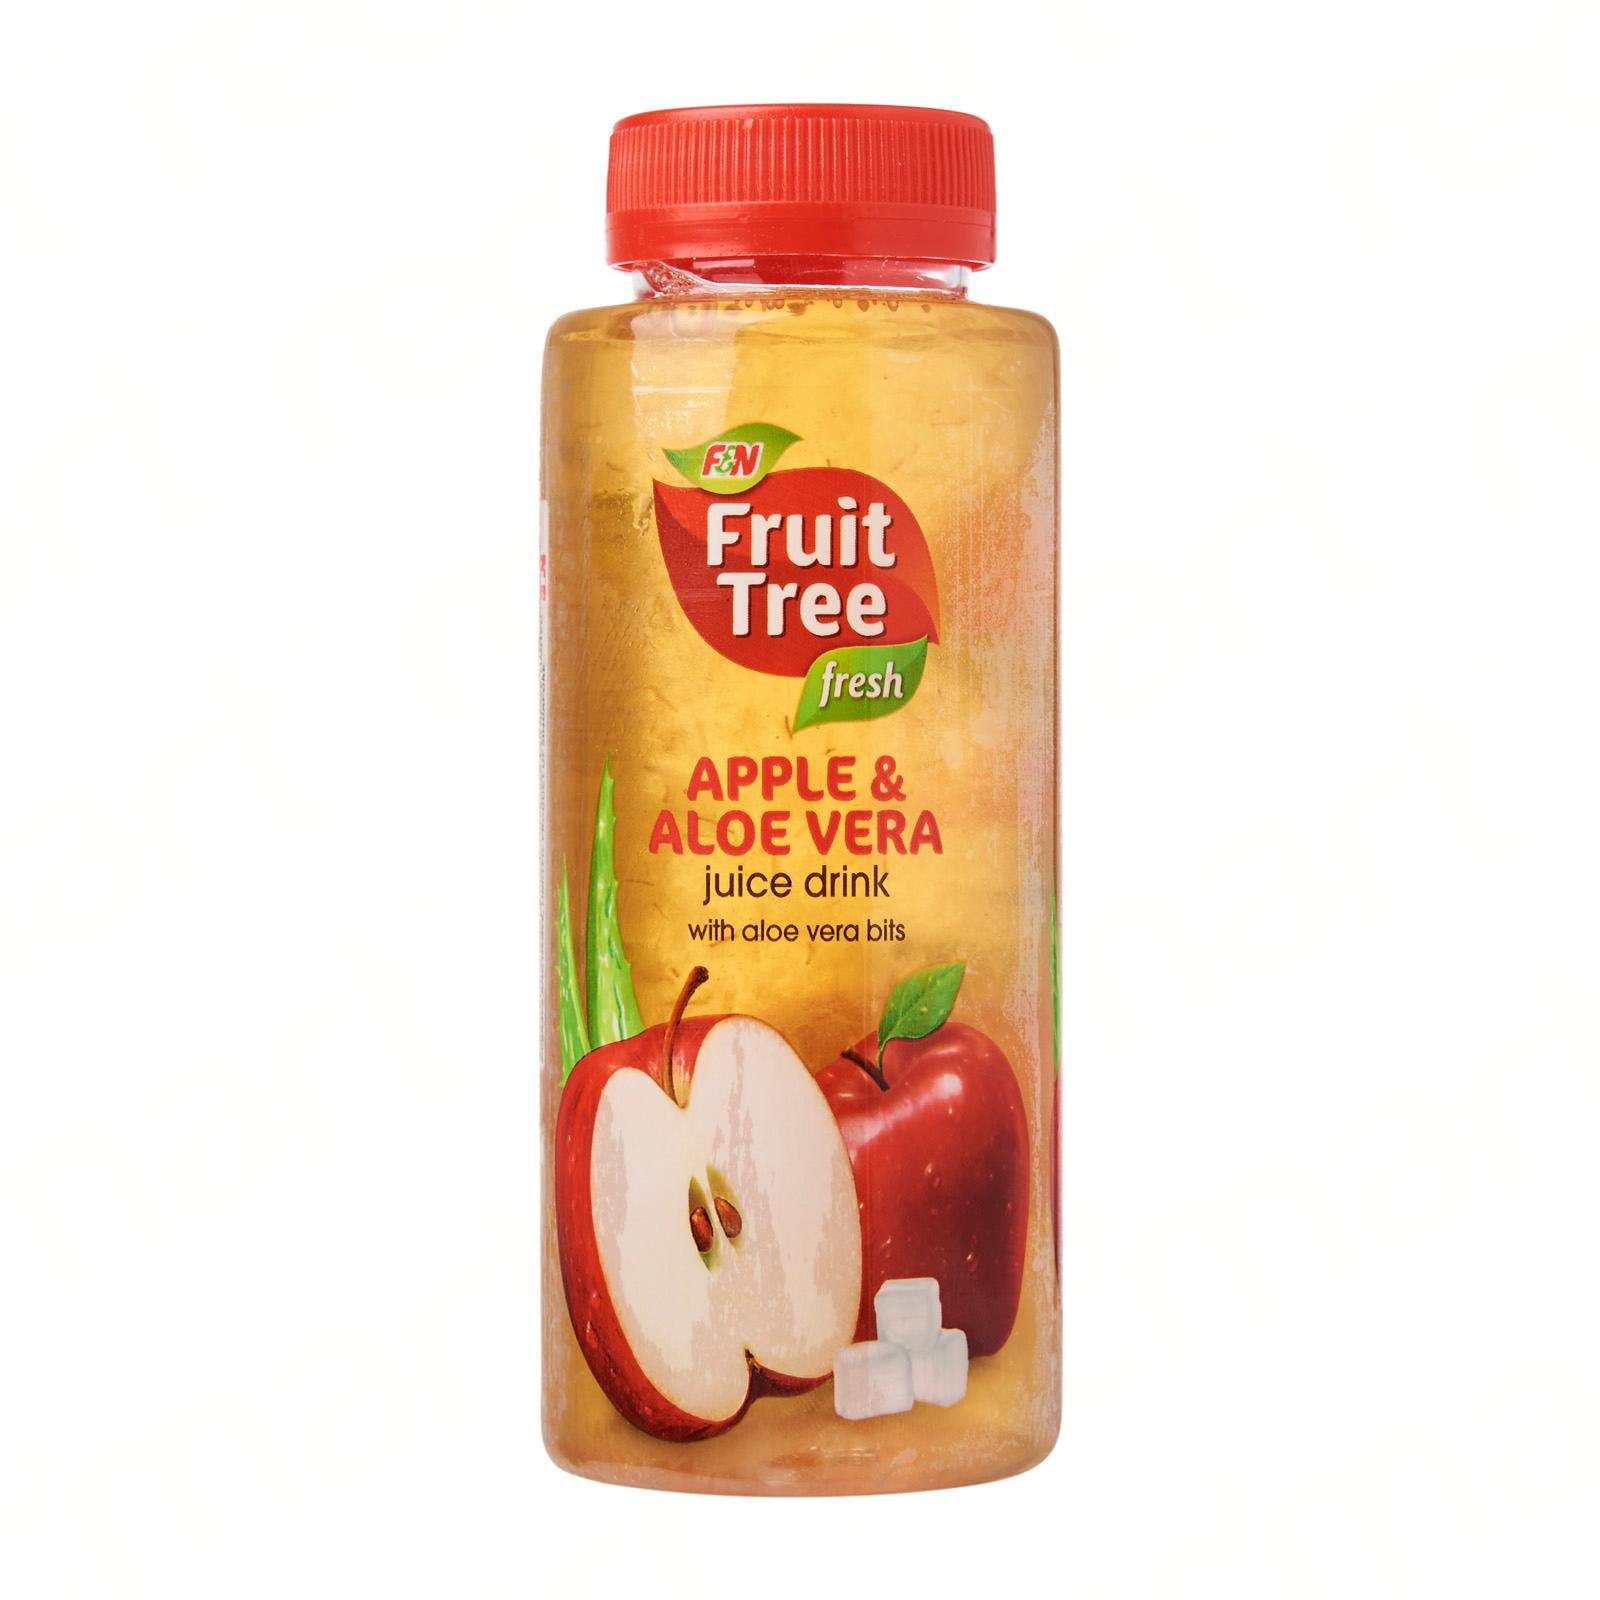 Fruit tree apple juice